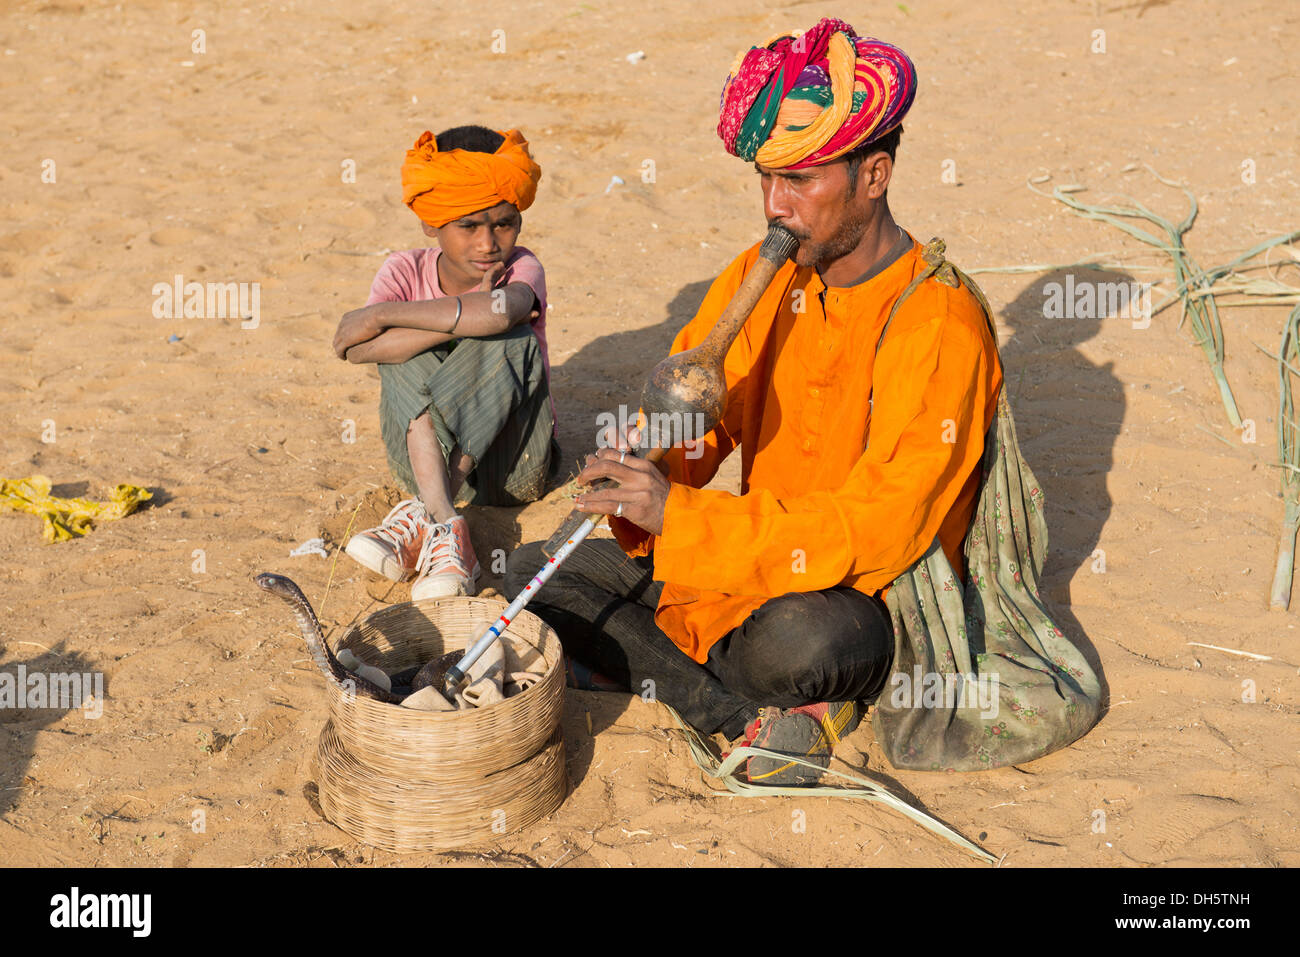 Rajasthani Schlangenbeschwörer mit einem Turban, eine Querflöte, eine Kobra oder Naja Wicklung aus einem Korb vor ihm zu spielen Stockfoto